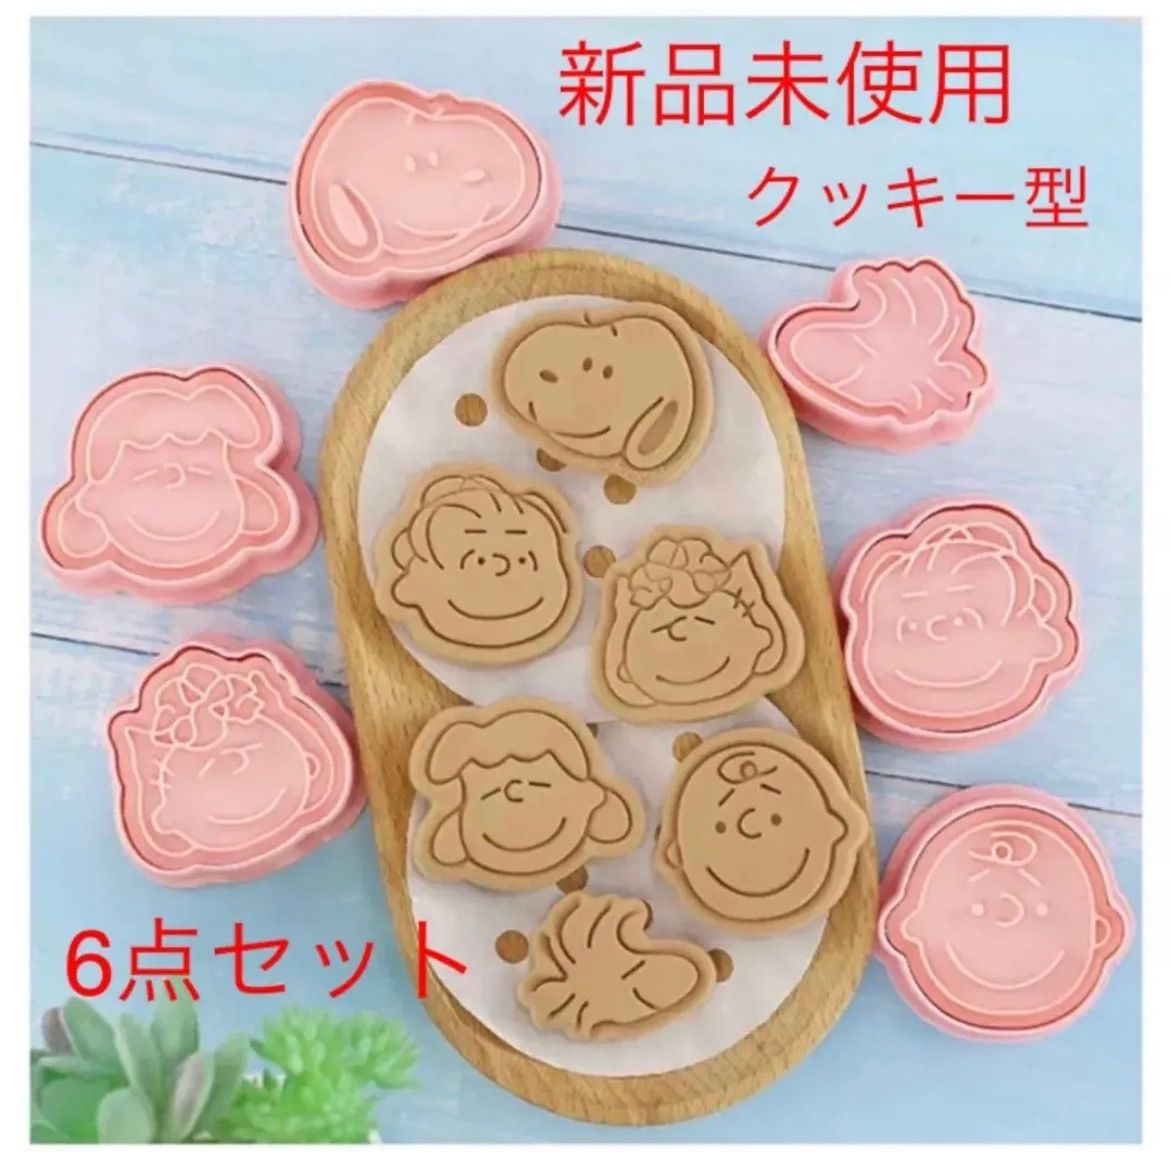 日本全国送料無料 cotta スヌーピークッキー型